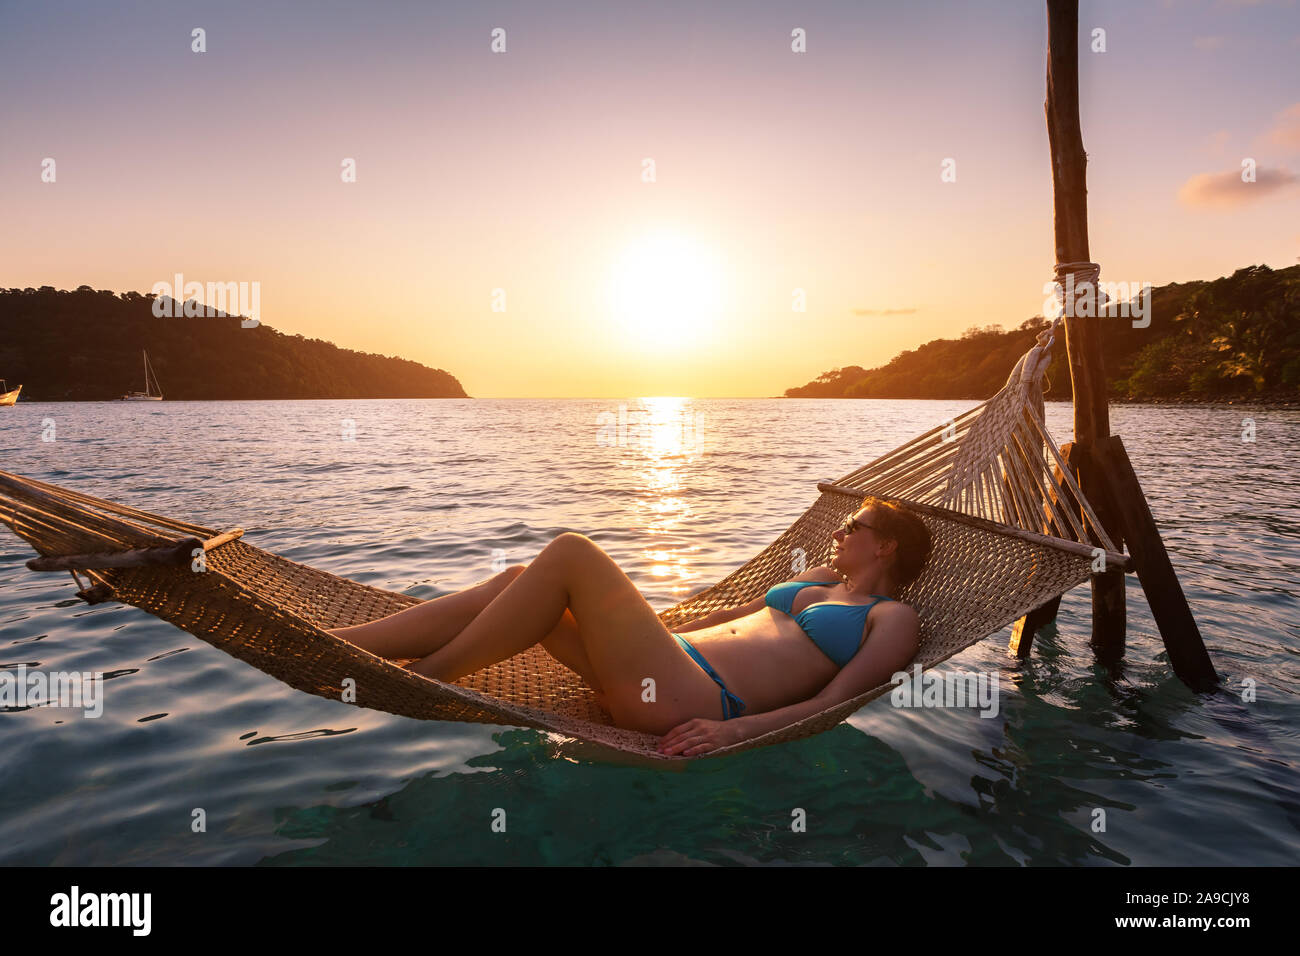 Frau am Strand in der Hängematte über Meer Wasser, warmen und sonnigen Sommer Abend in Urlaub Ferien Hotel, glücklichen Moment bei Sonnenuntergang Stockfoto